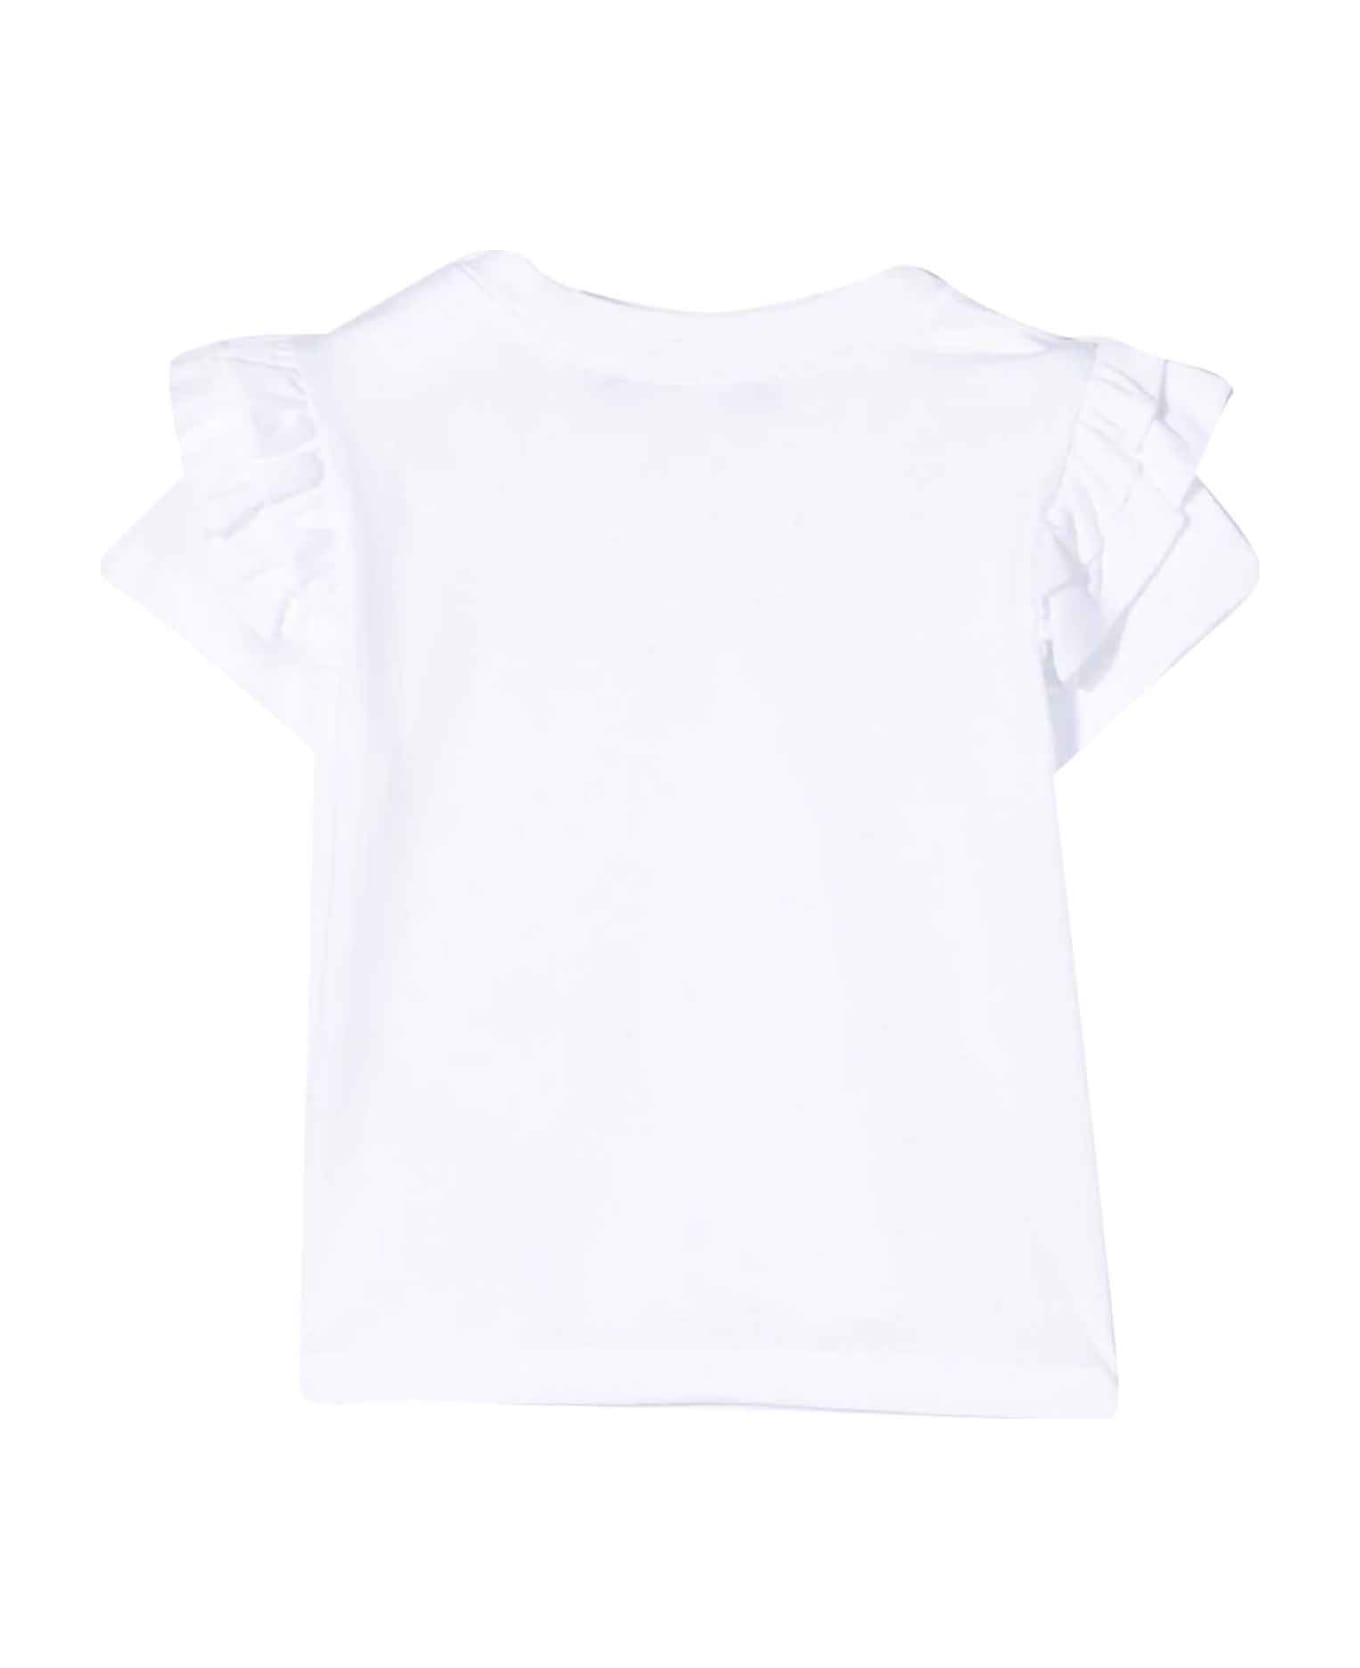 Balmain White T-shirt Baby Girl - Bianco/oro